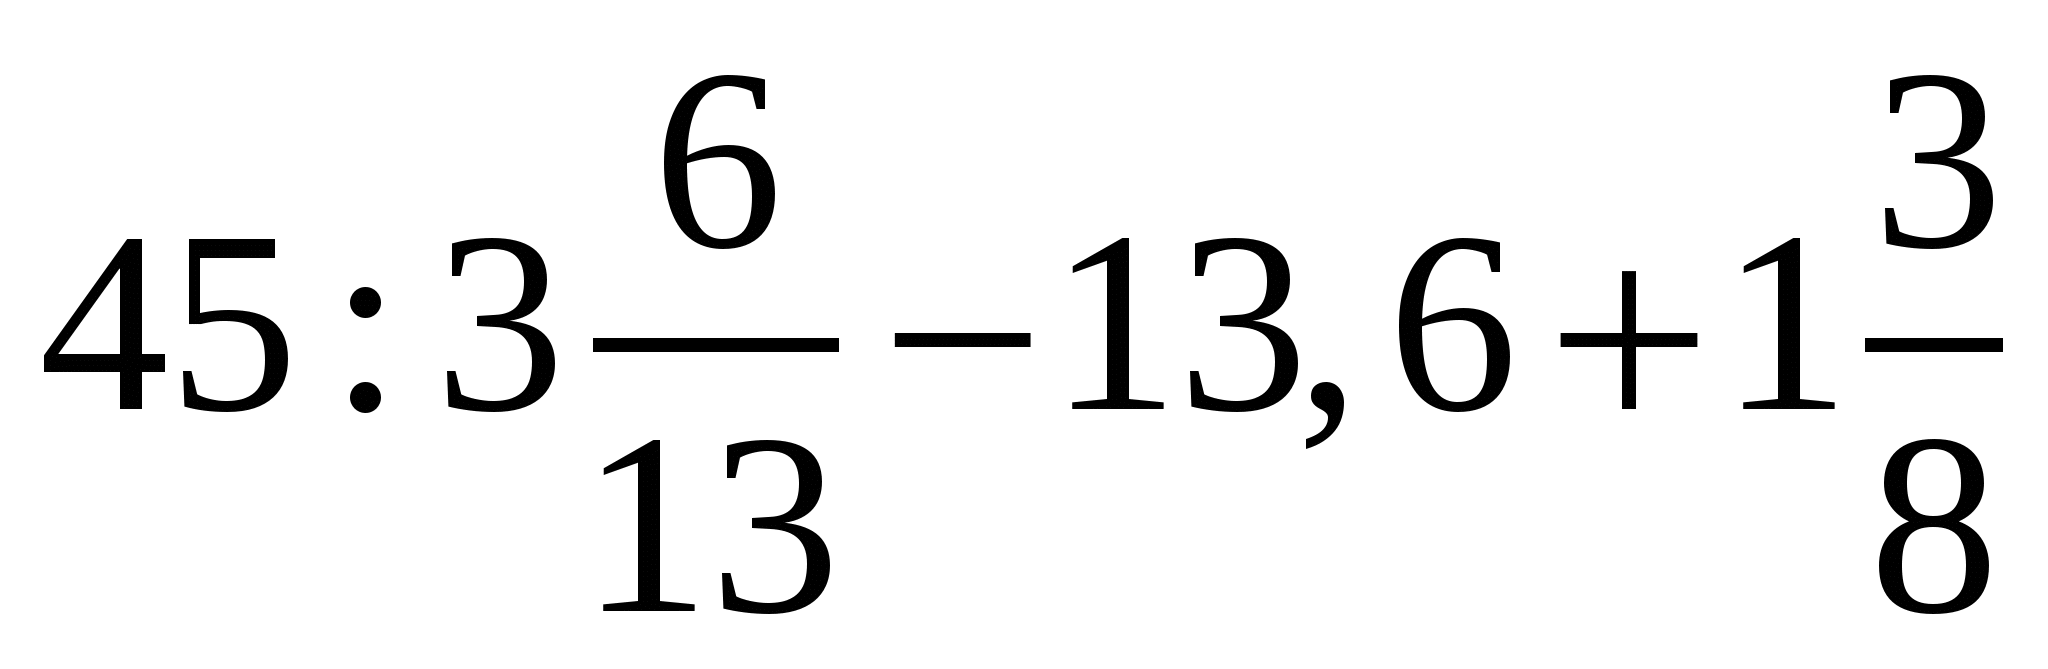 Х 6 3 3 35. 2,6х-0,75=0,9х-35,6. 45 3 6/13-13.6+1 3/8 Решение. Уравнение 2.6х-0.75 0.9х-35.6. 2,6х-0, 75=0, 9х-35, 6 ответ.